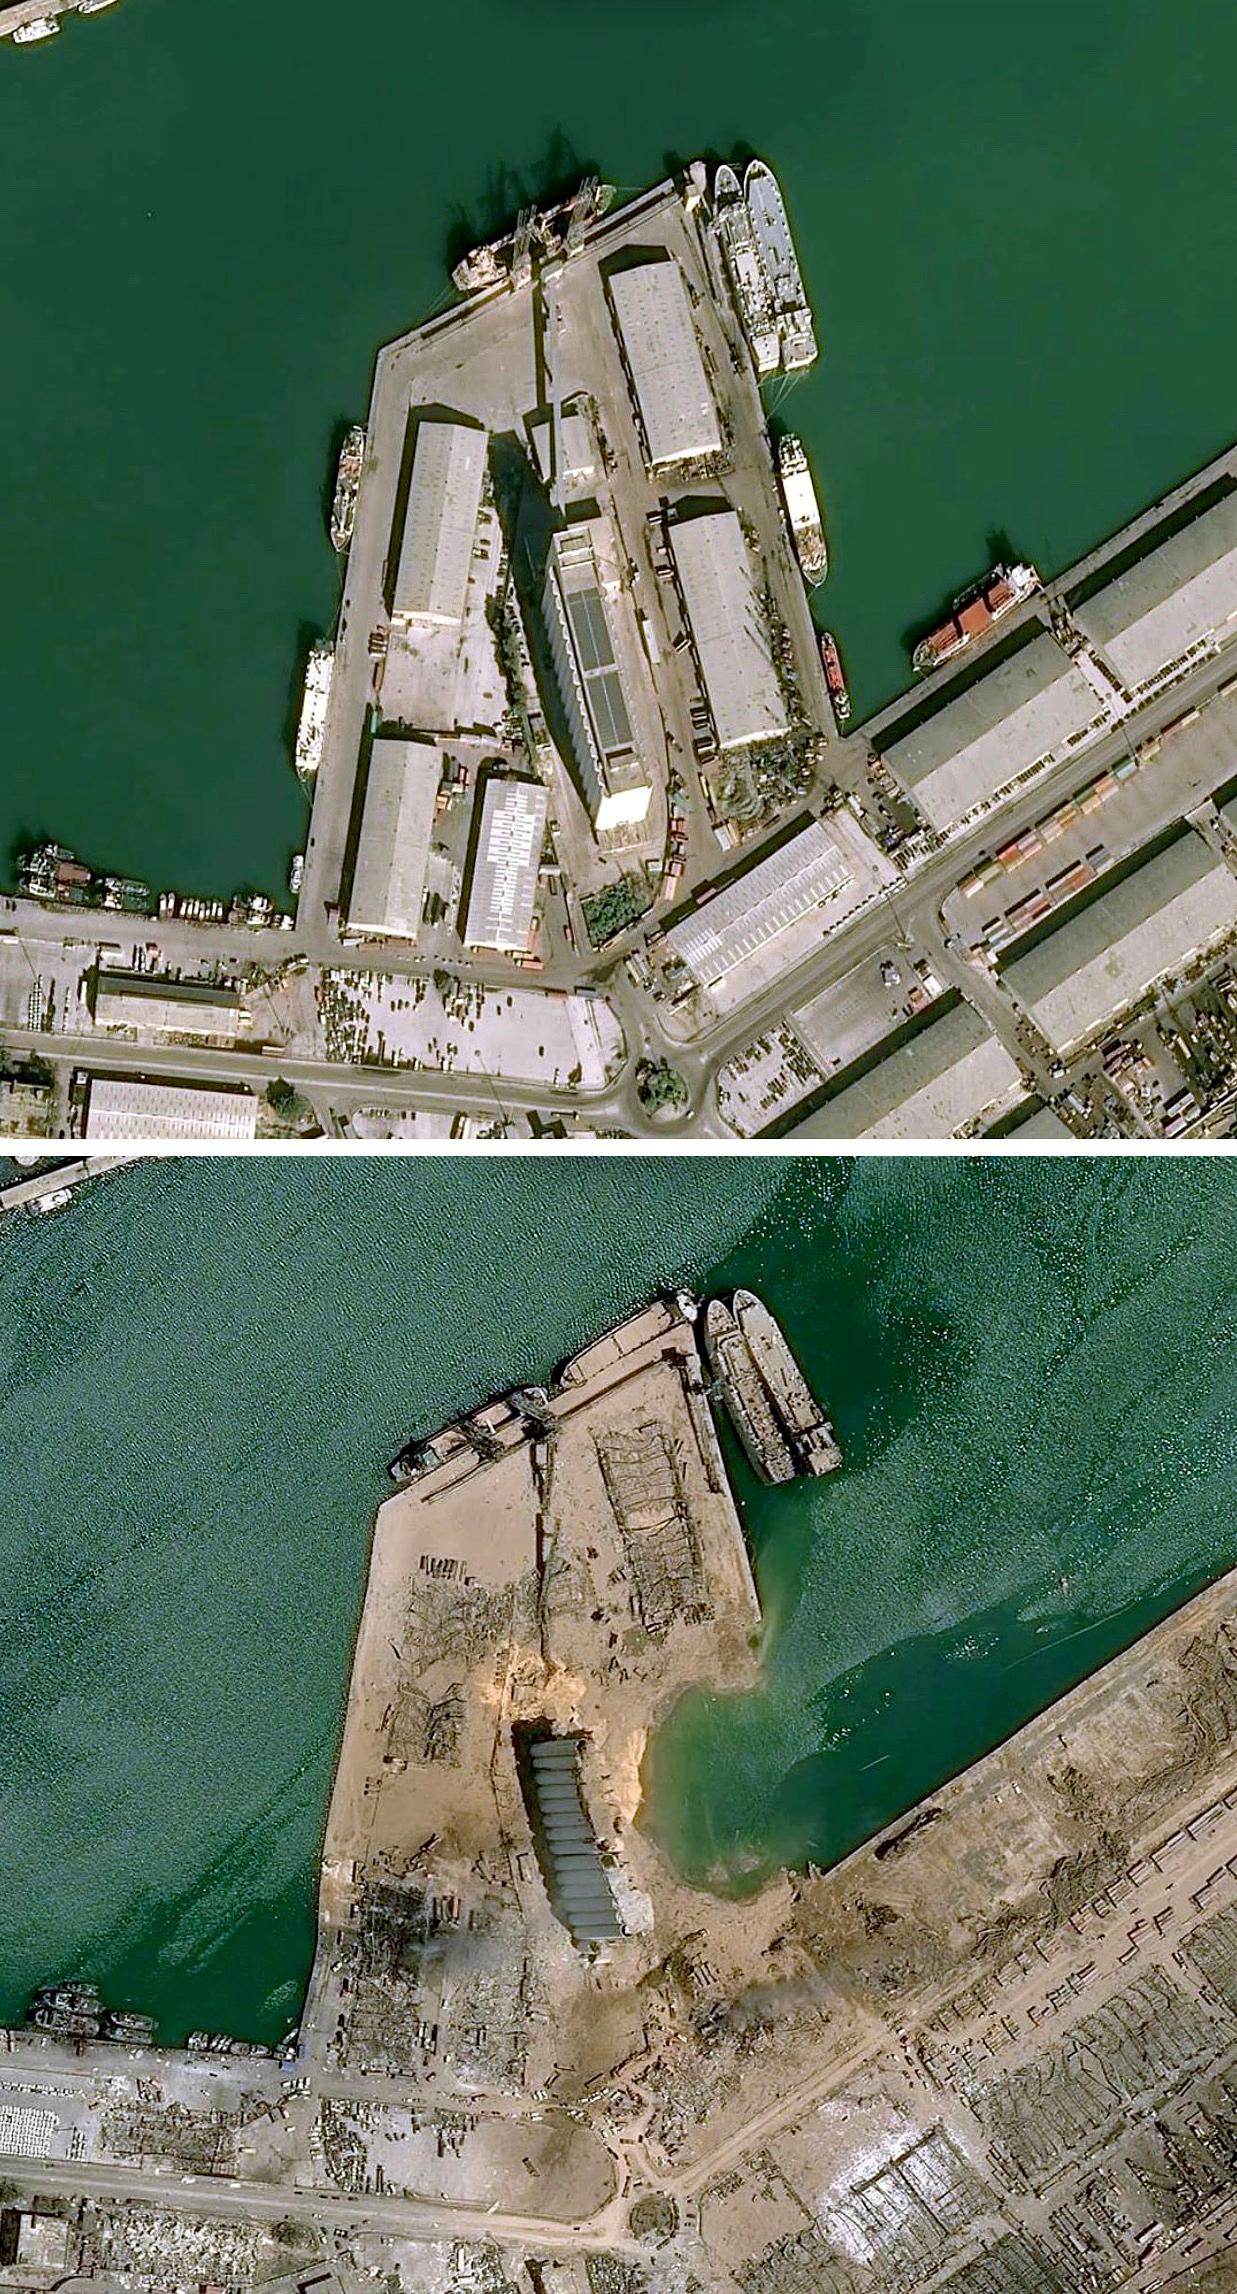 上图：爆炸前的贝鲁特港口（爆炸中心）。 下图：爆炸后的贝鲁特港口。图中的大窟窿就是此次爆炸的中心，仓库已经彻底消失，此前该仓库内存放着约2750吨硝酸铵，就是此次大爆炸的“元凶”。